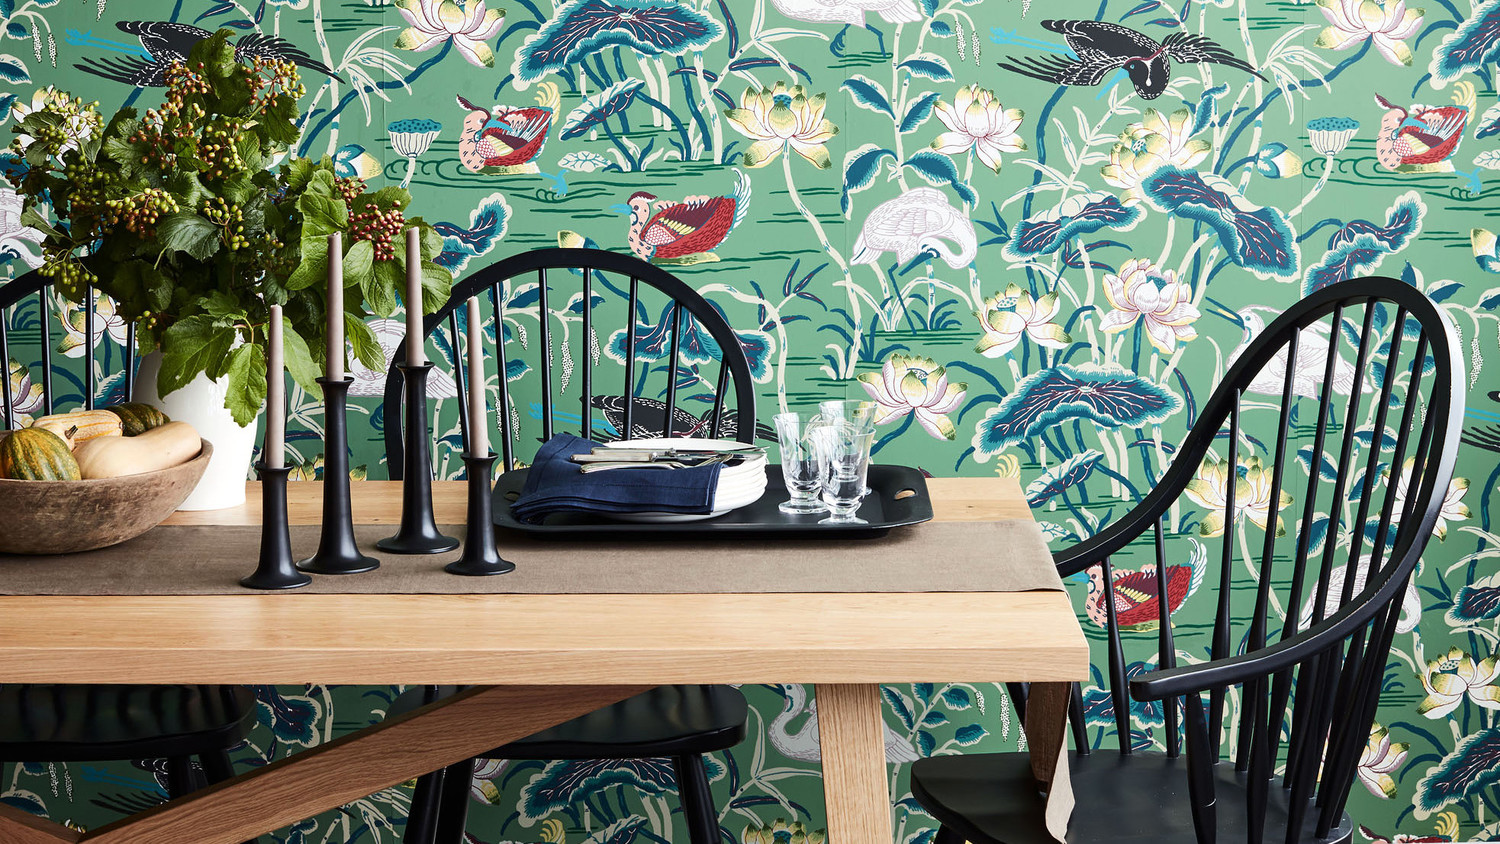 3 Dining Room Looks We Love - Schumacher Lotus Garden Jade , HD Wallpaper & Backgrounds